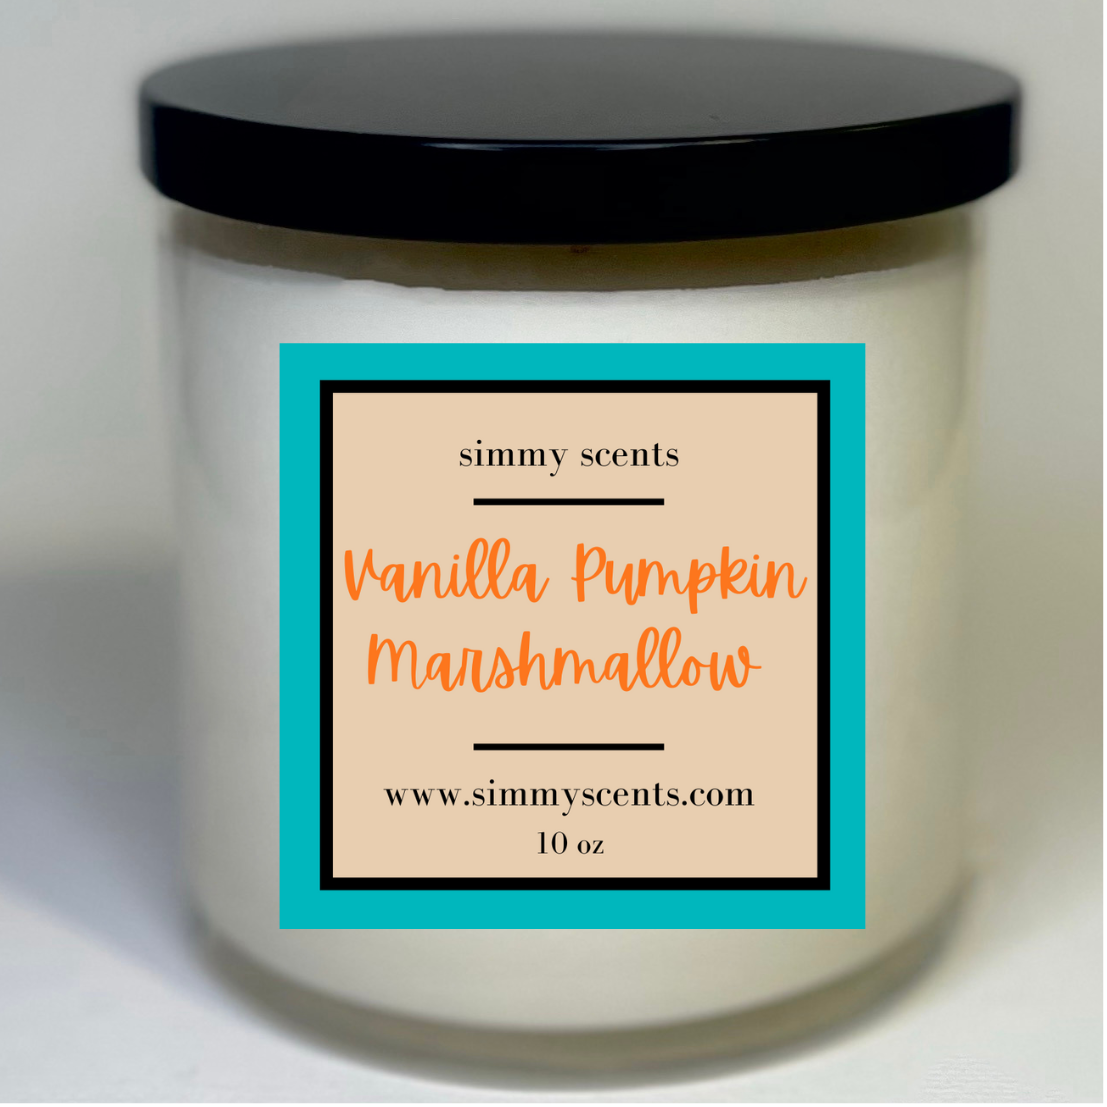 Vanilla Pumpkin Marshmallow